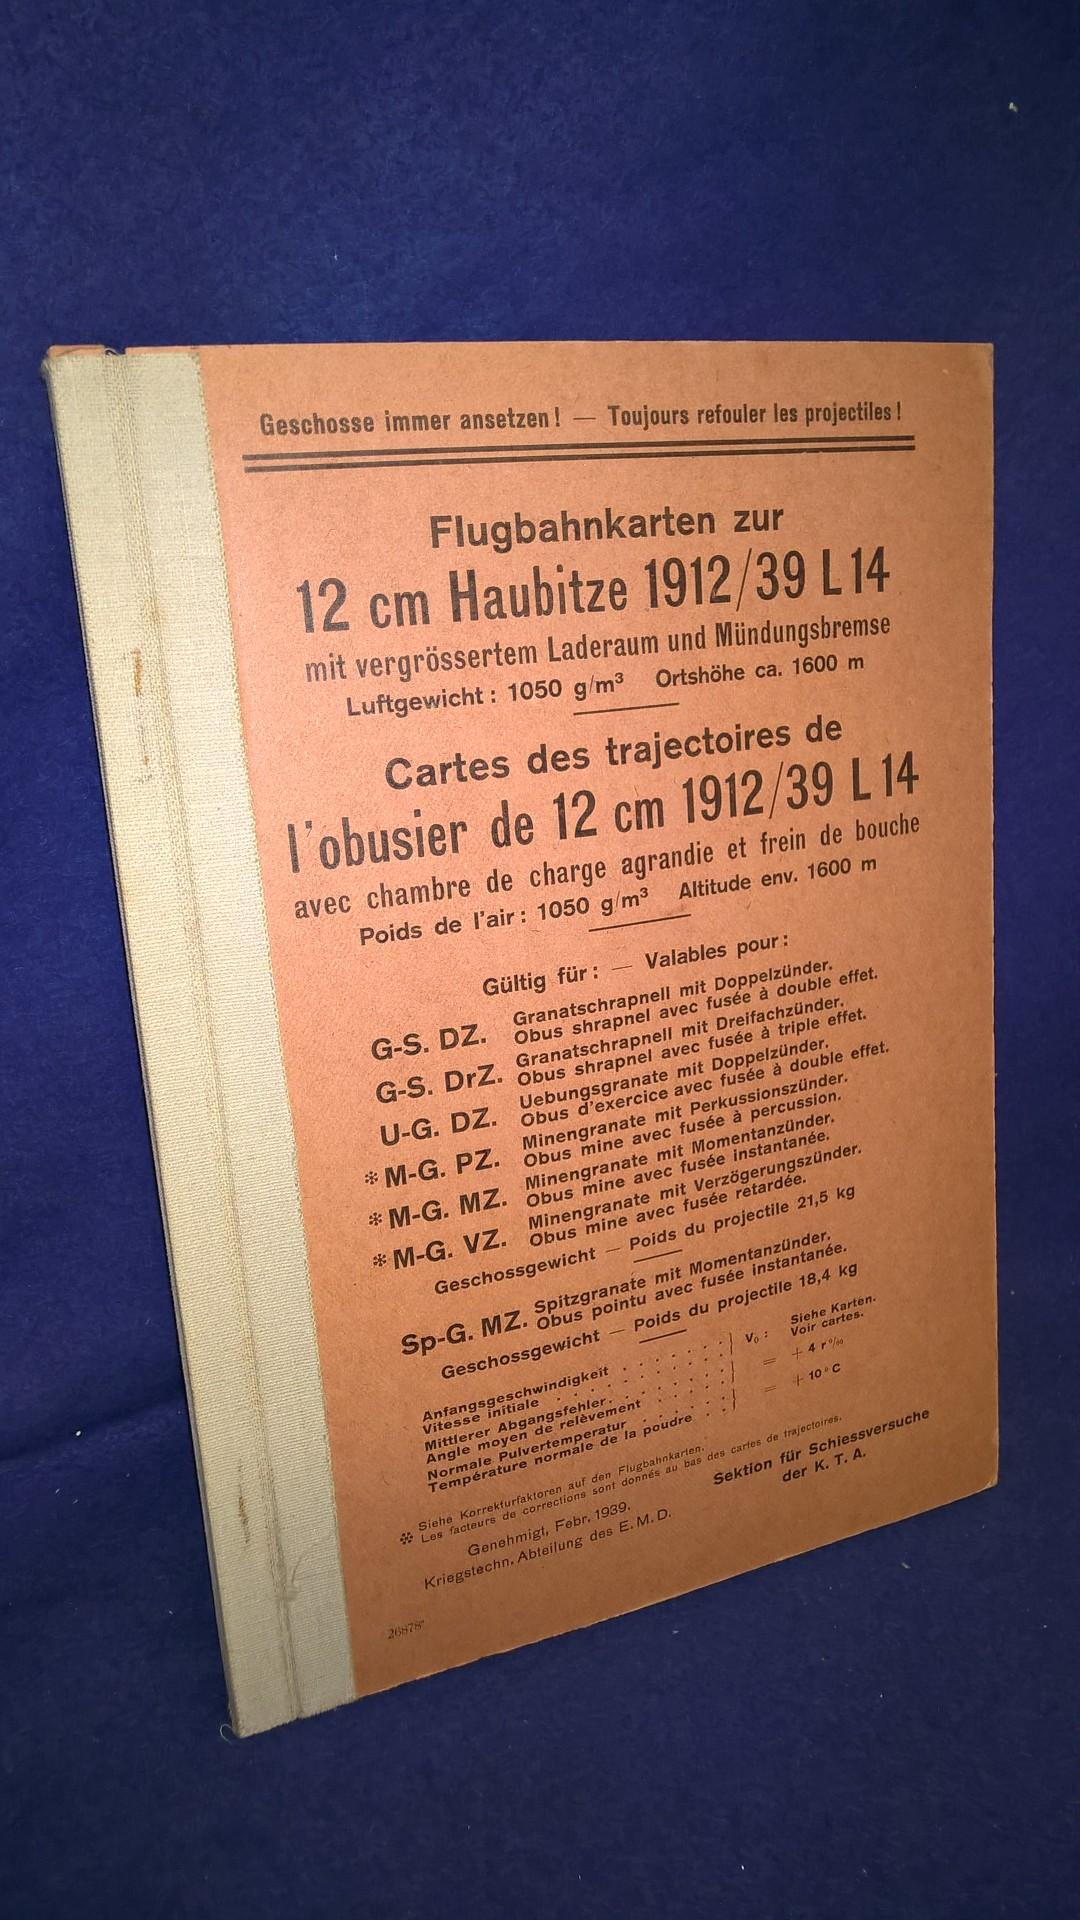 Flugbahnkarten zur 12cm Haubitze 1912/39 L 14 mit vergrößertem Laderaum und Mündungsbremse.